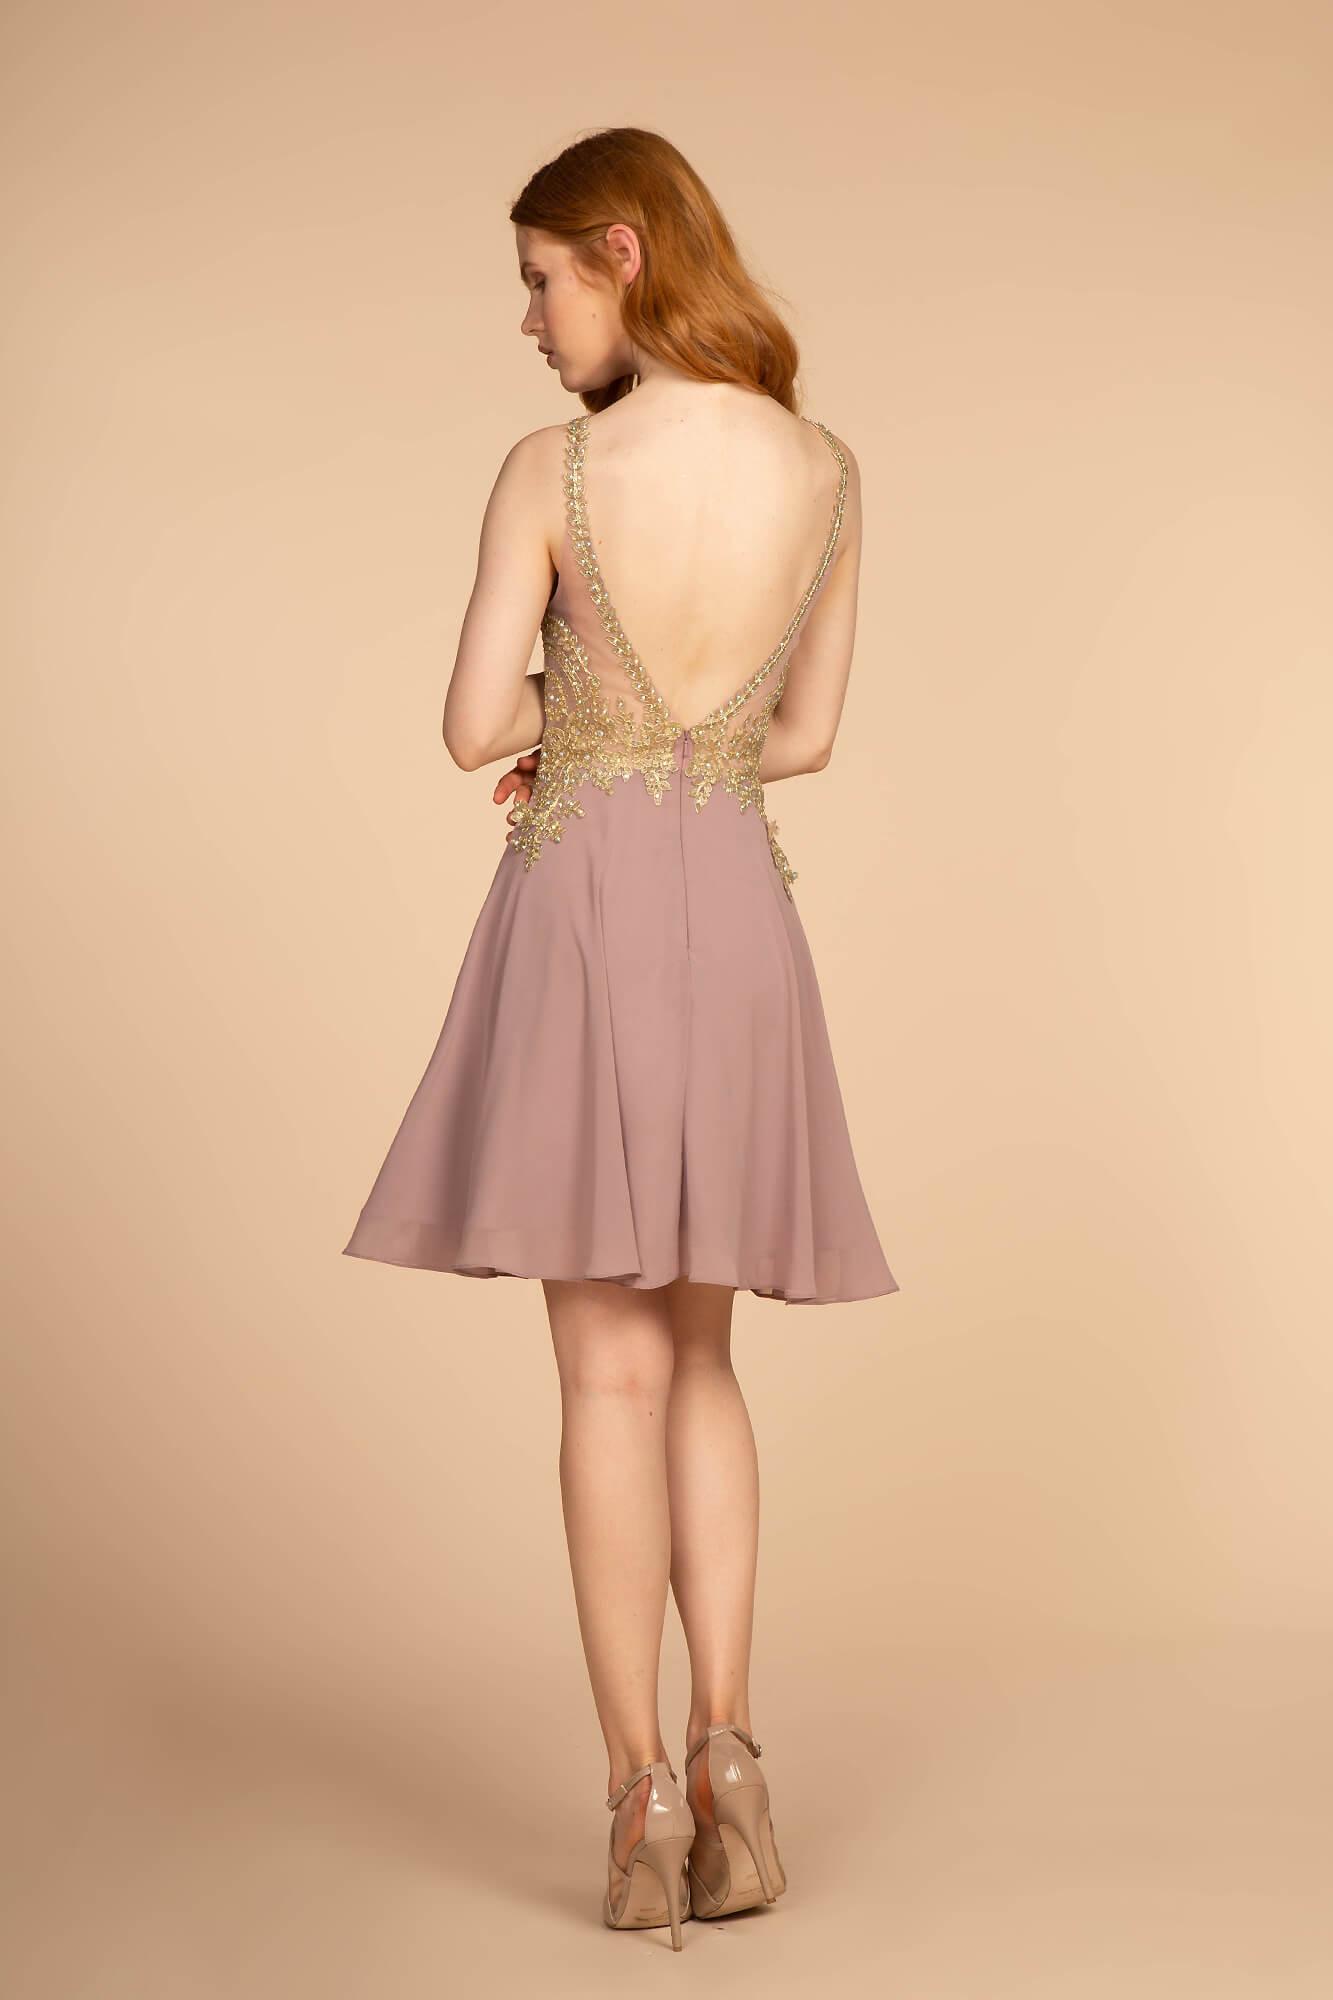 Halter Short Prom Dress Homecoming - The Dress Outlet Elizabeth K